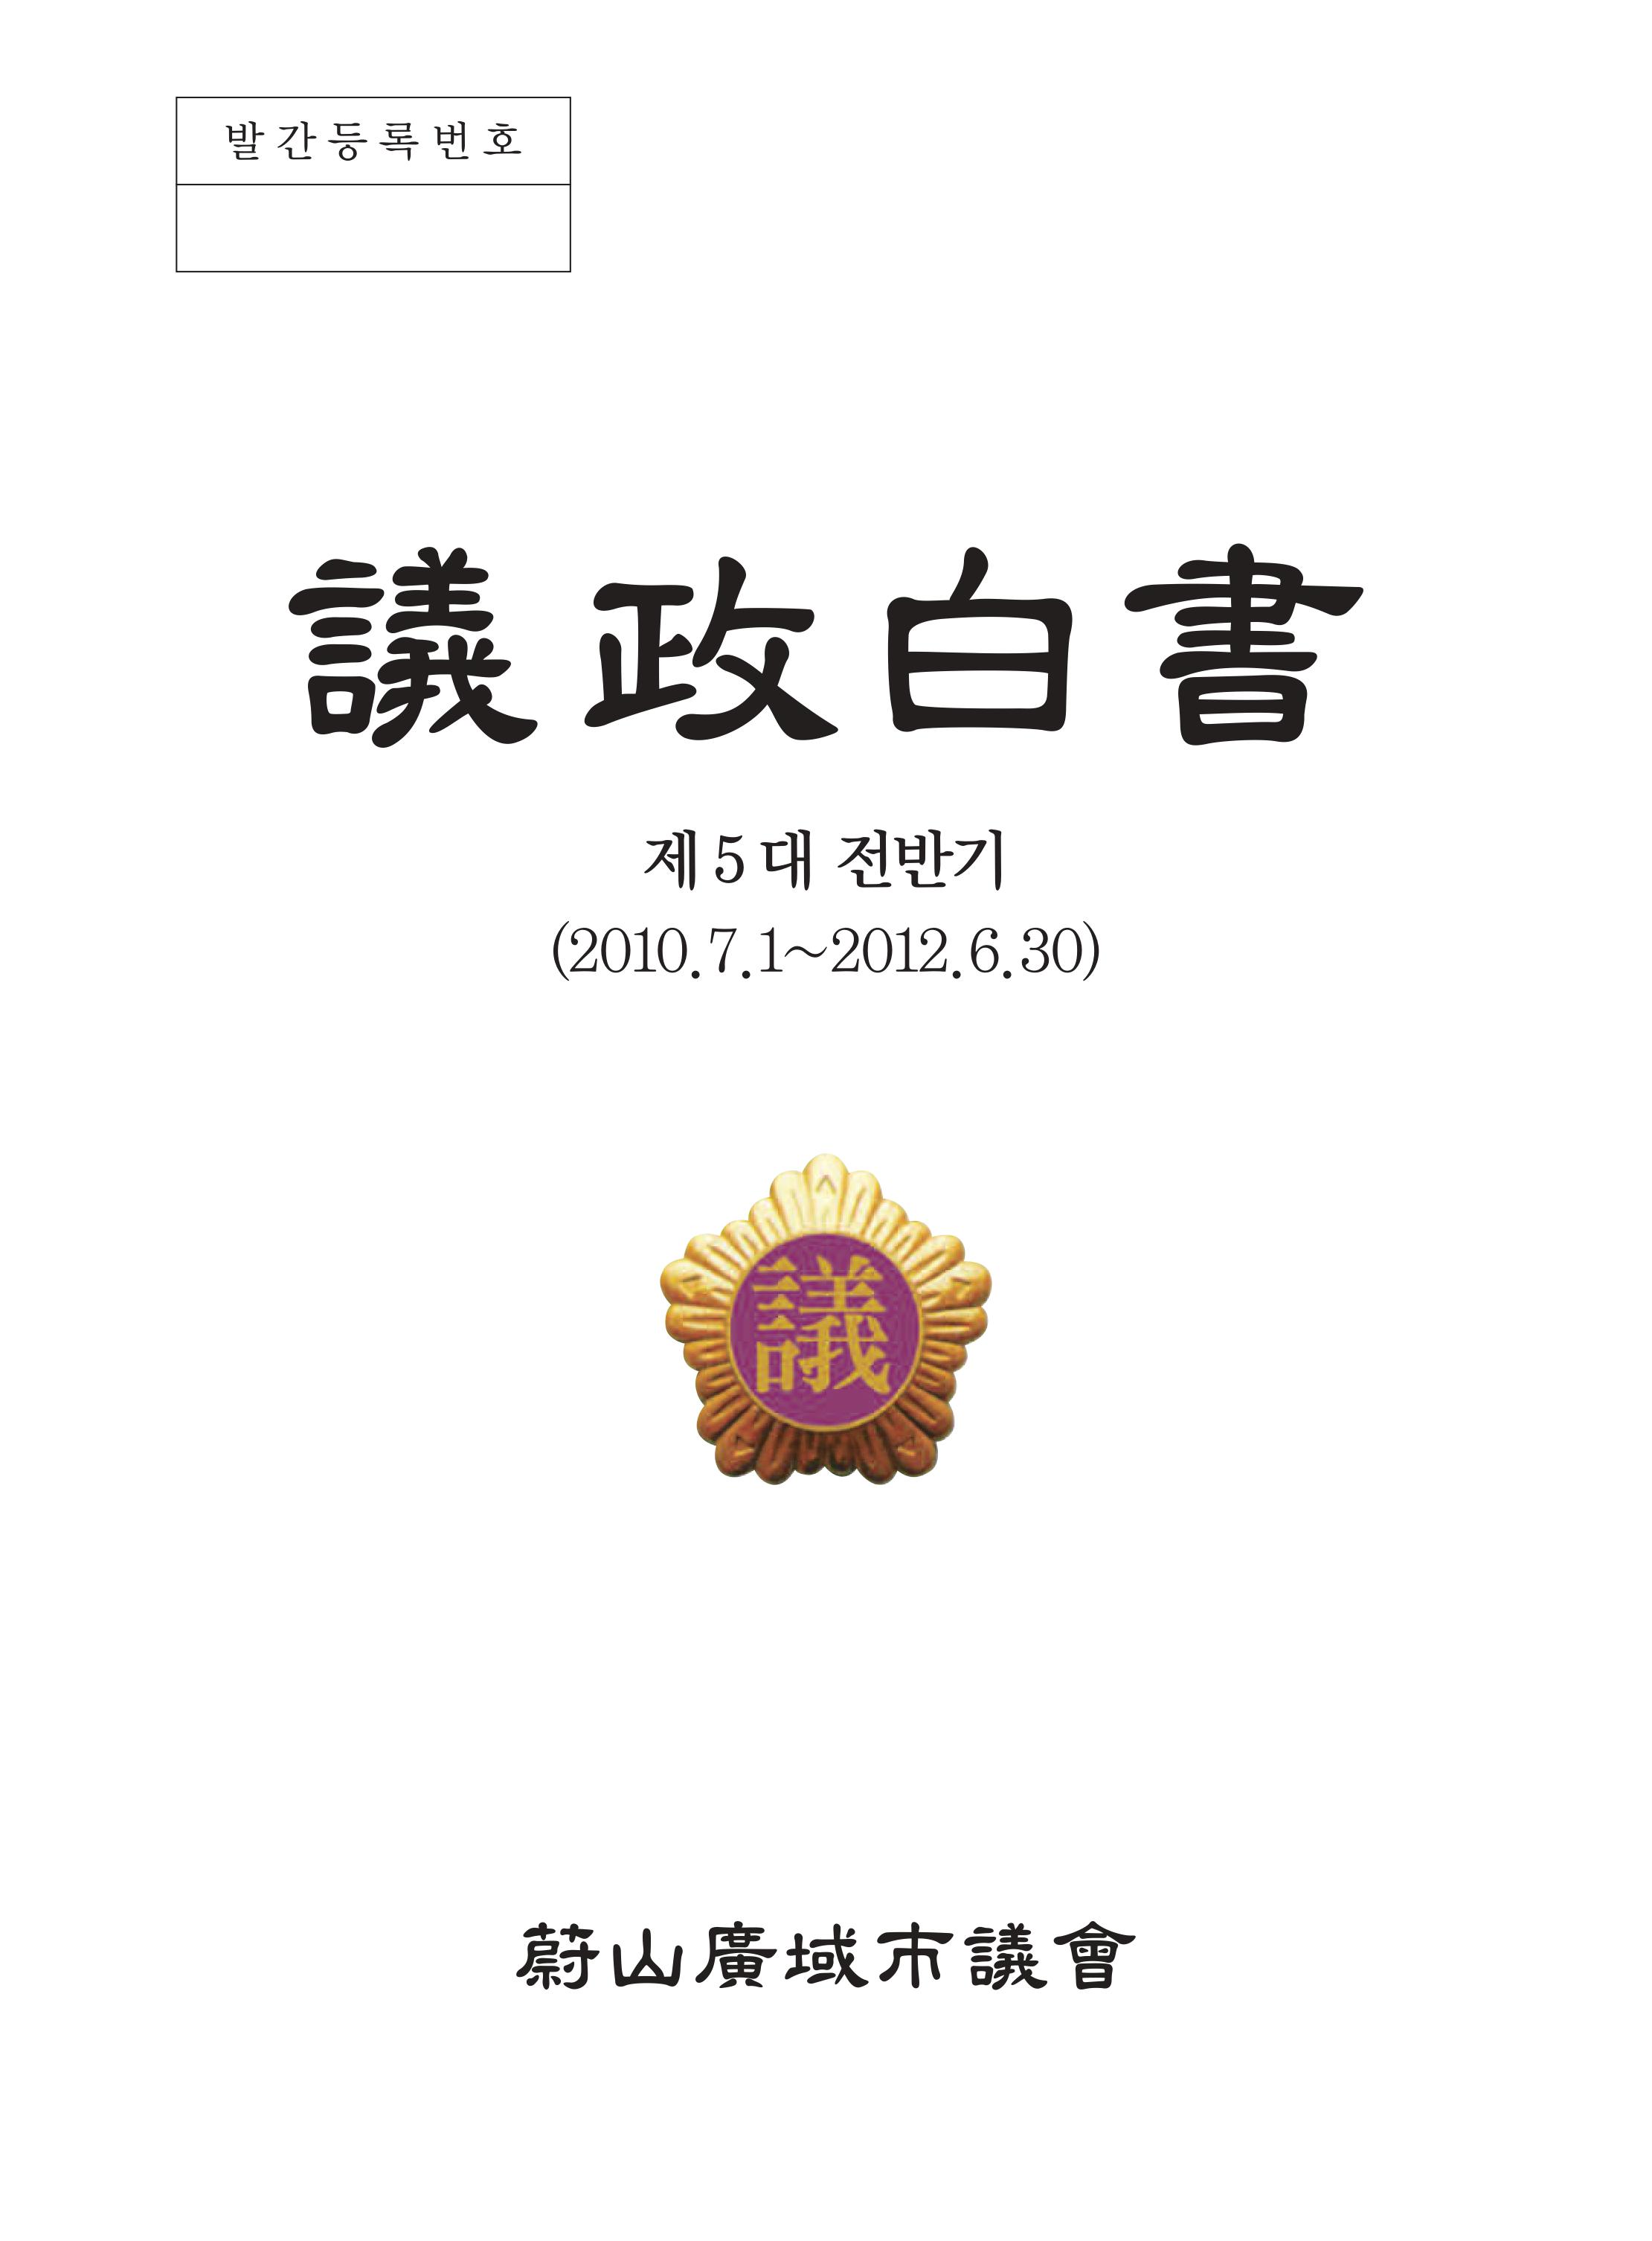 제 5대 후반기 의정백서 (2012.7.1~2014.6.30) 표지1